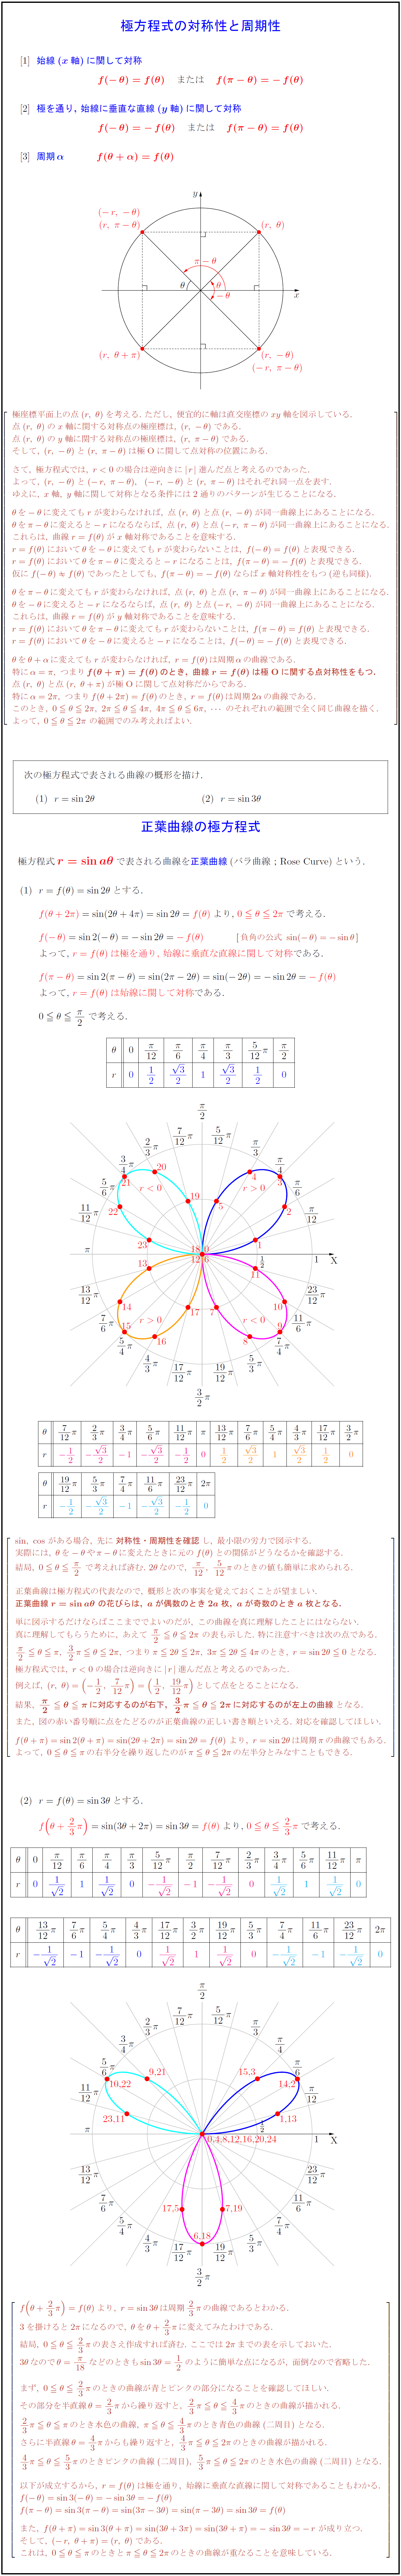 高校数学 極方程式の対称性と周期性 正葉曲線の極方程式 R Sina8 受験の月